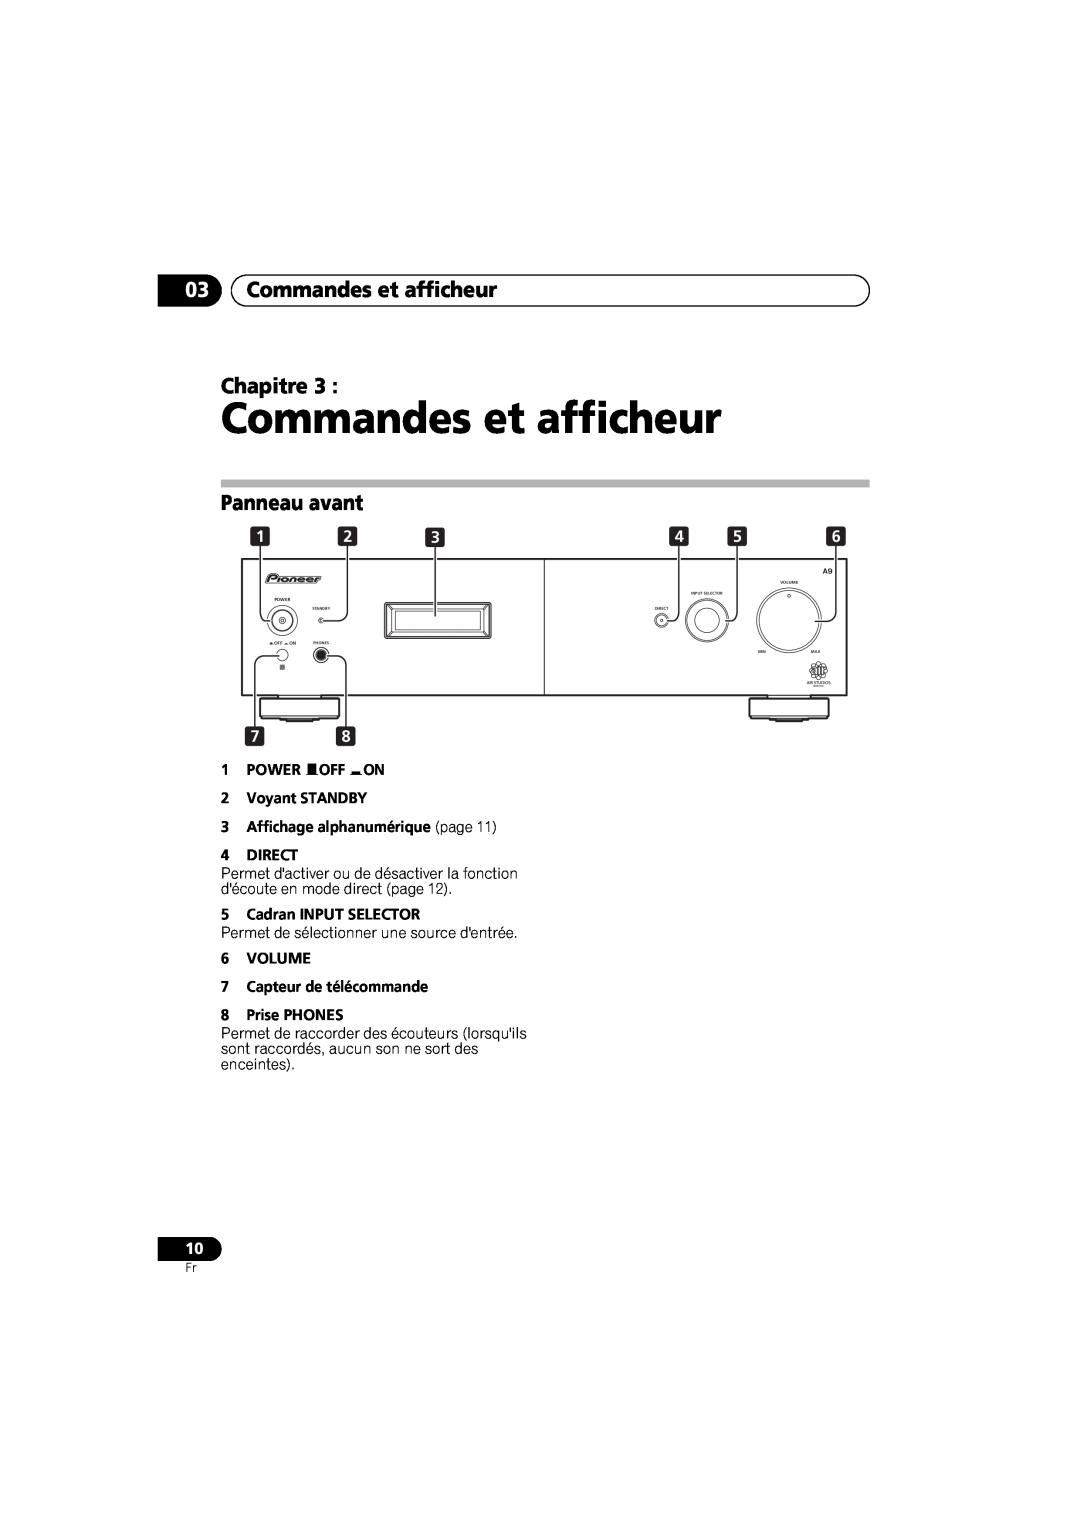 Pioneer A-A9-J manual 03Commandes et afficheur Chapitre, Panneau avant, 1POWER OFF ON 2Voyant STANDBY 